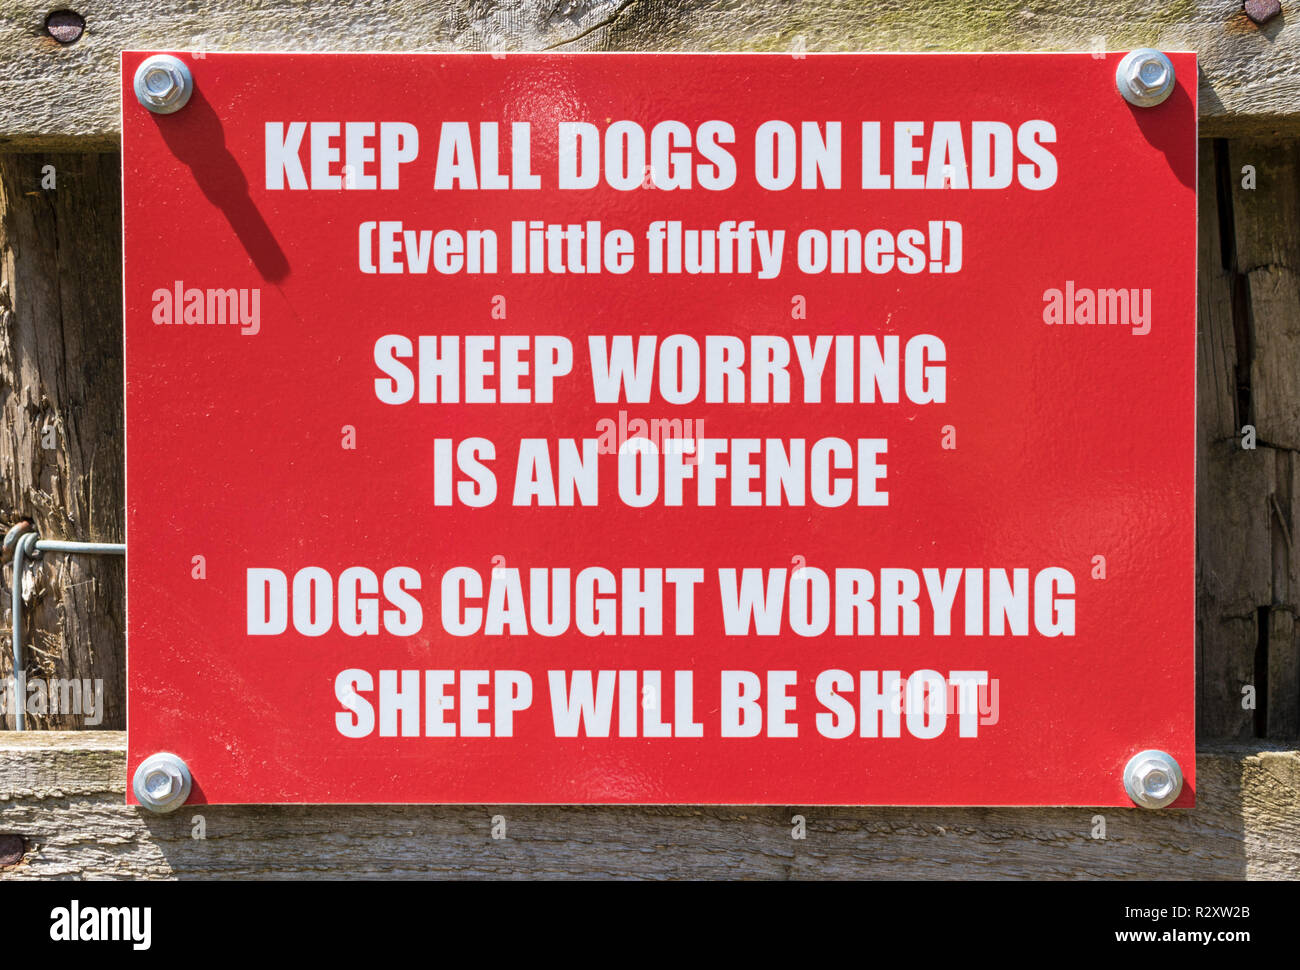 Lake District in Großbritannien Schafe besorgniserregend ist ein Verstoß melden Hunde gefangen besorgniserregend wird Schuß Warnung Lake District National Park Cumbria England uk gb Europa sein Stockfoto